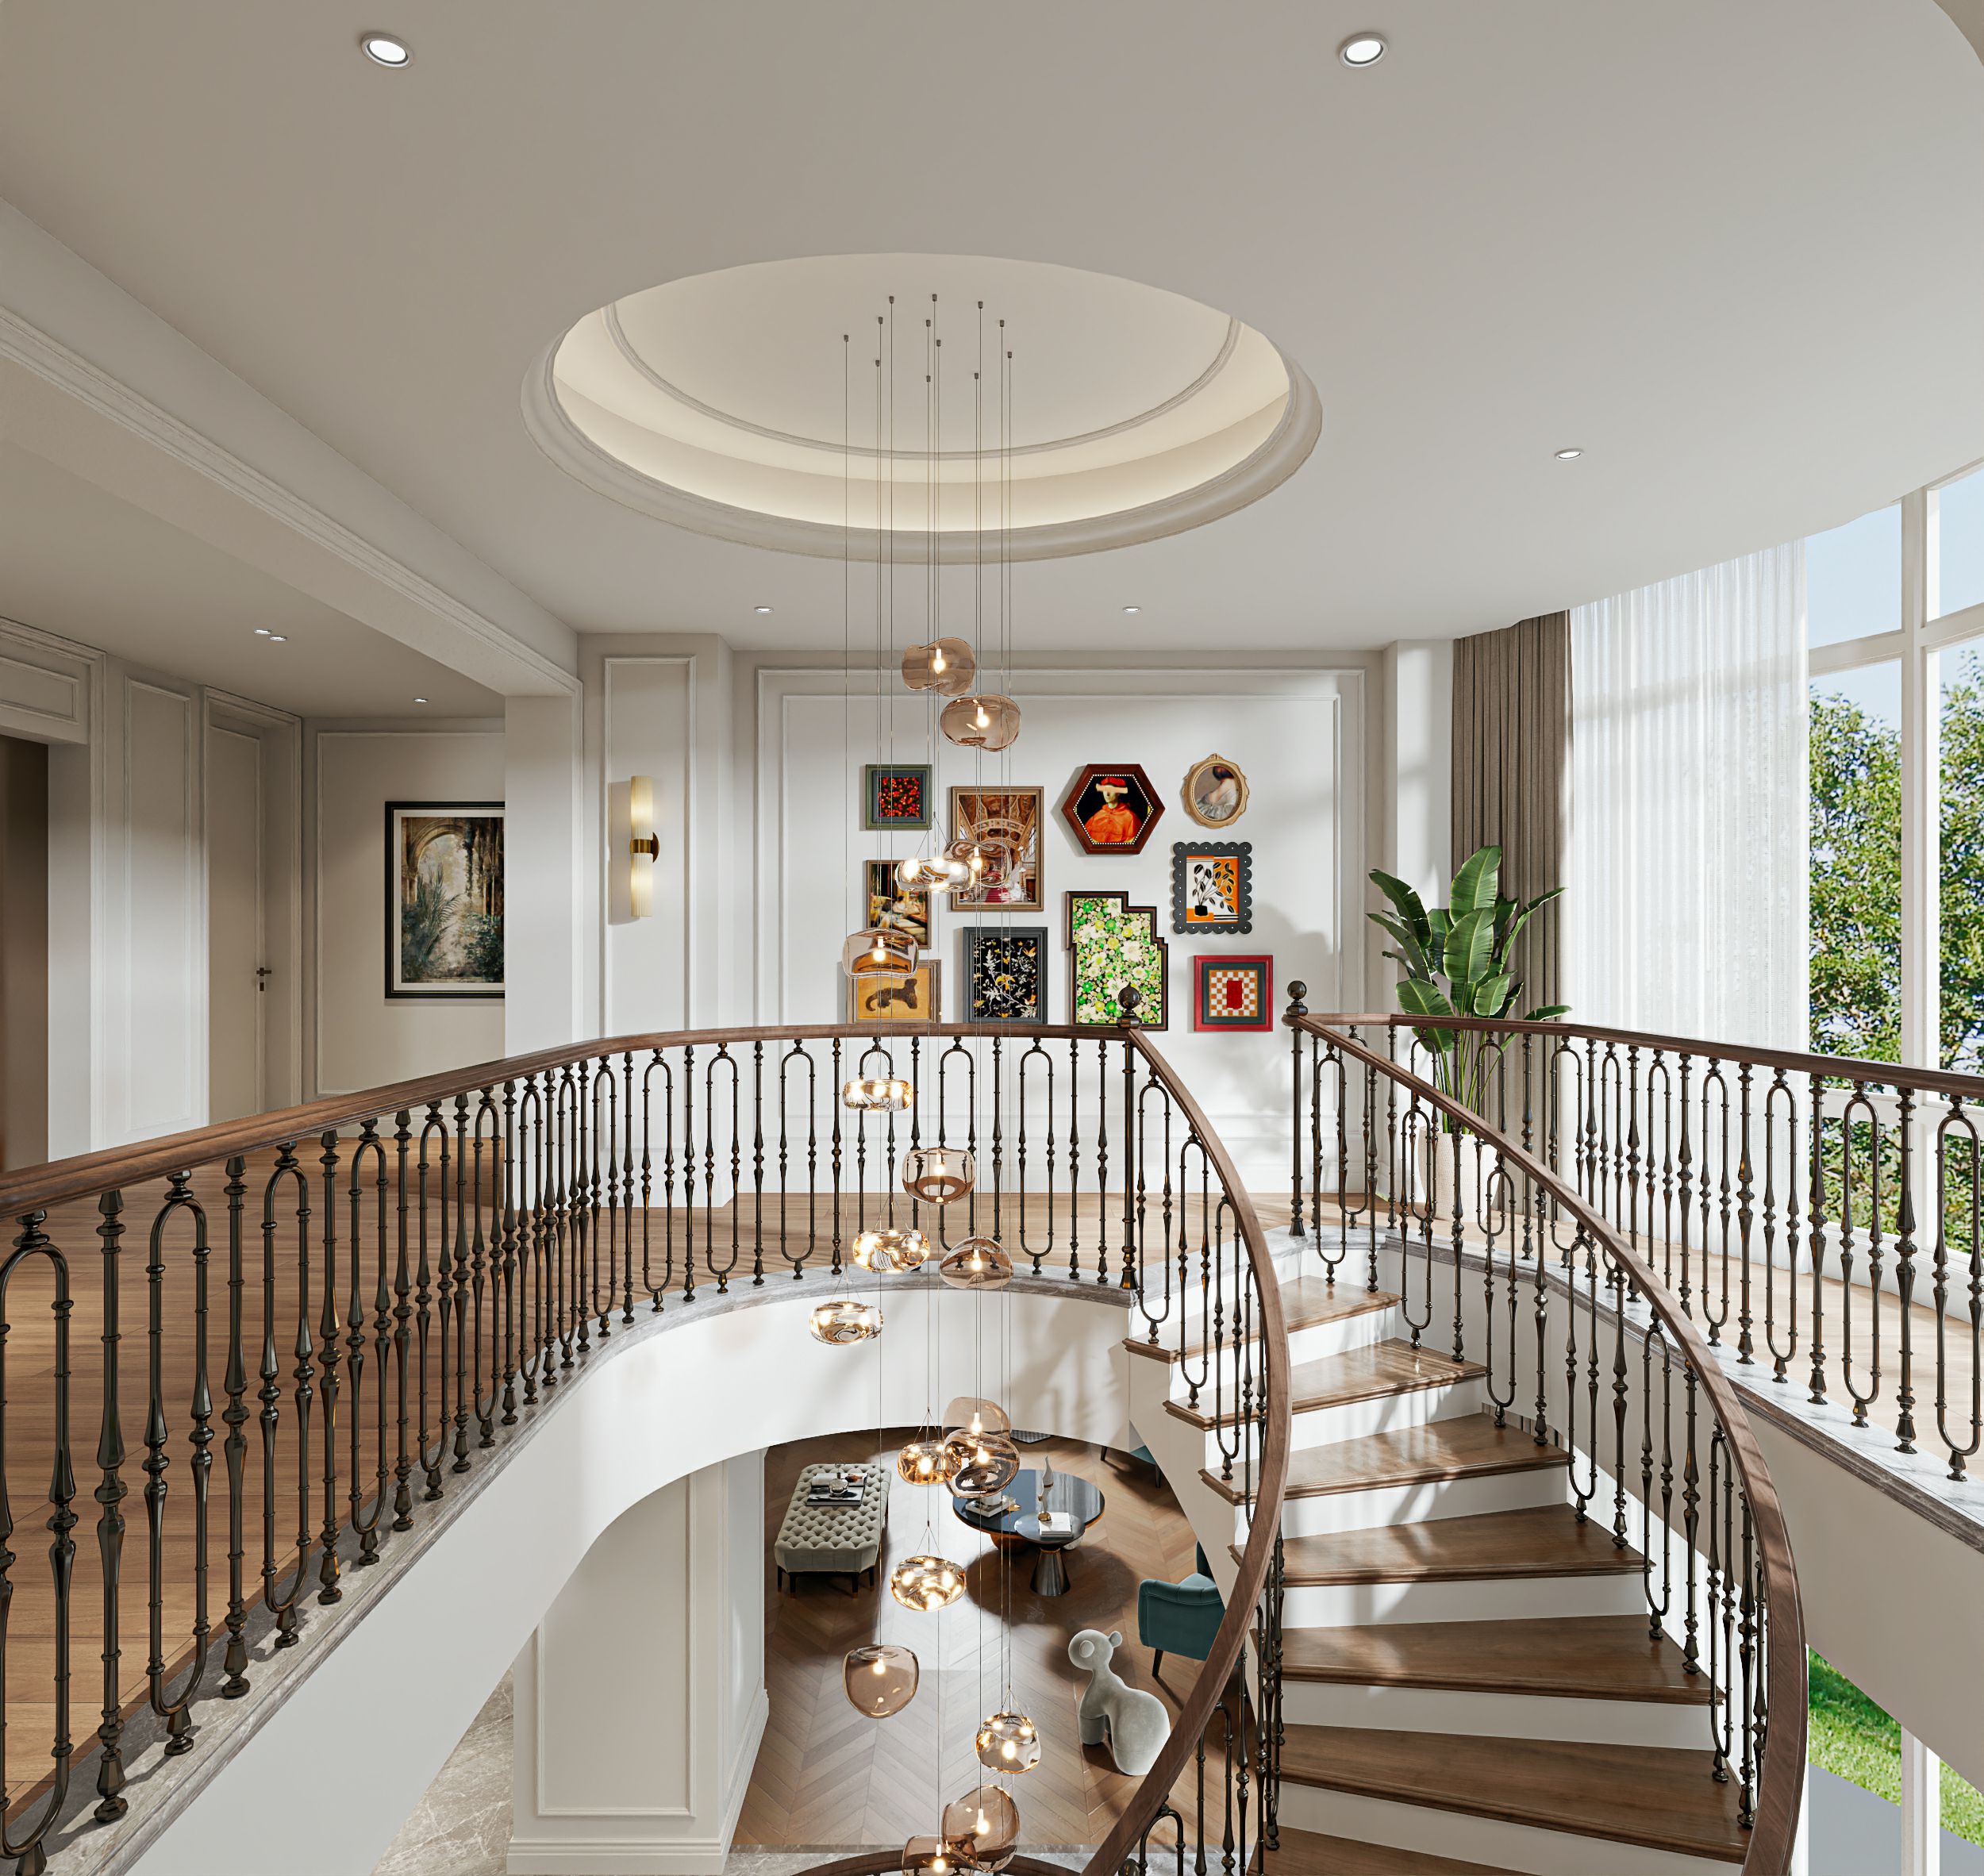 张家港法式别墅装修风格案例解析精致优雅的法式风情演绎